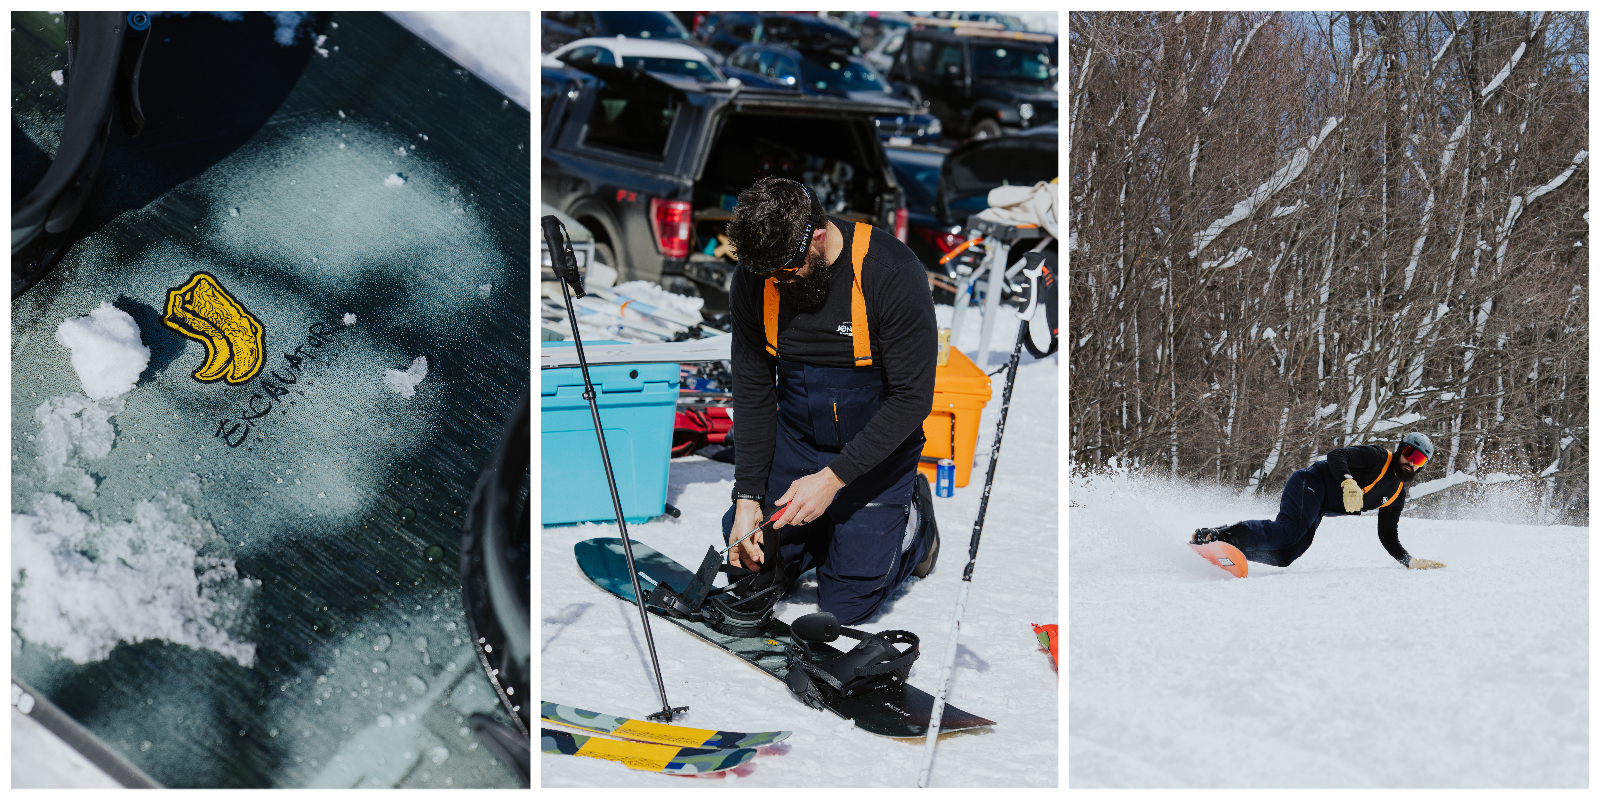 TSM, The Ski Monster, snow, winter, Sunapee Mountain, New Hampshire, K2, K2 Mindbender, K2 BOA boots, K2 skis, ski test, ski demo